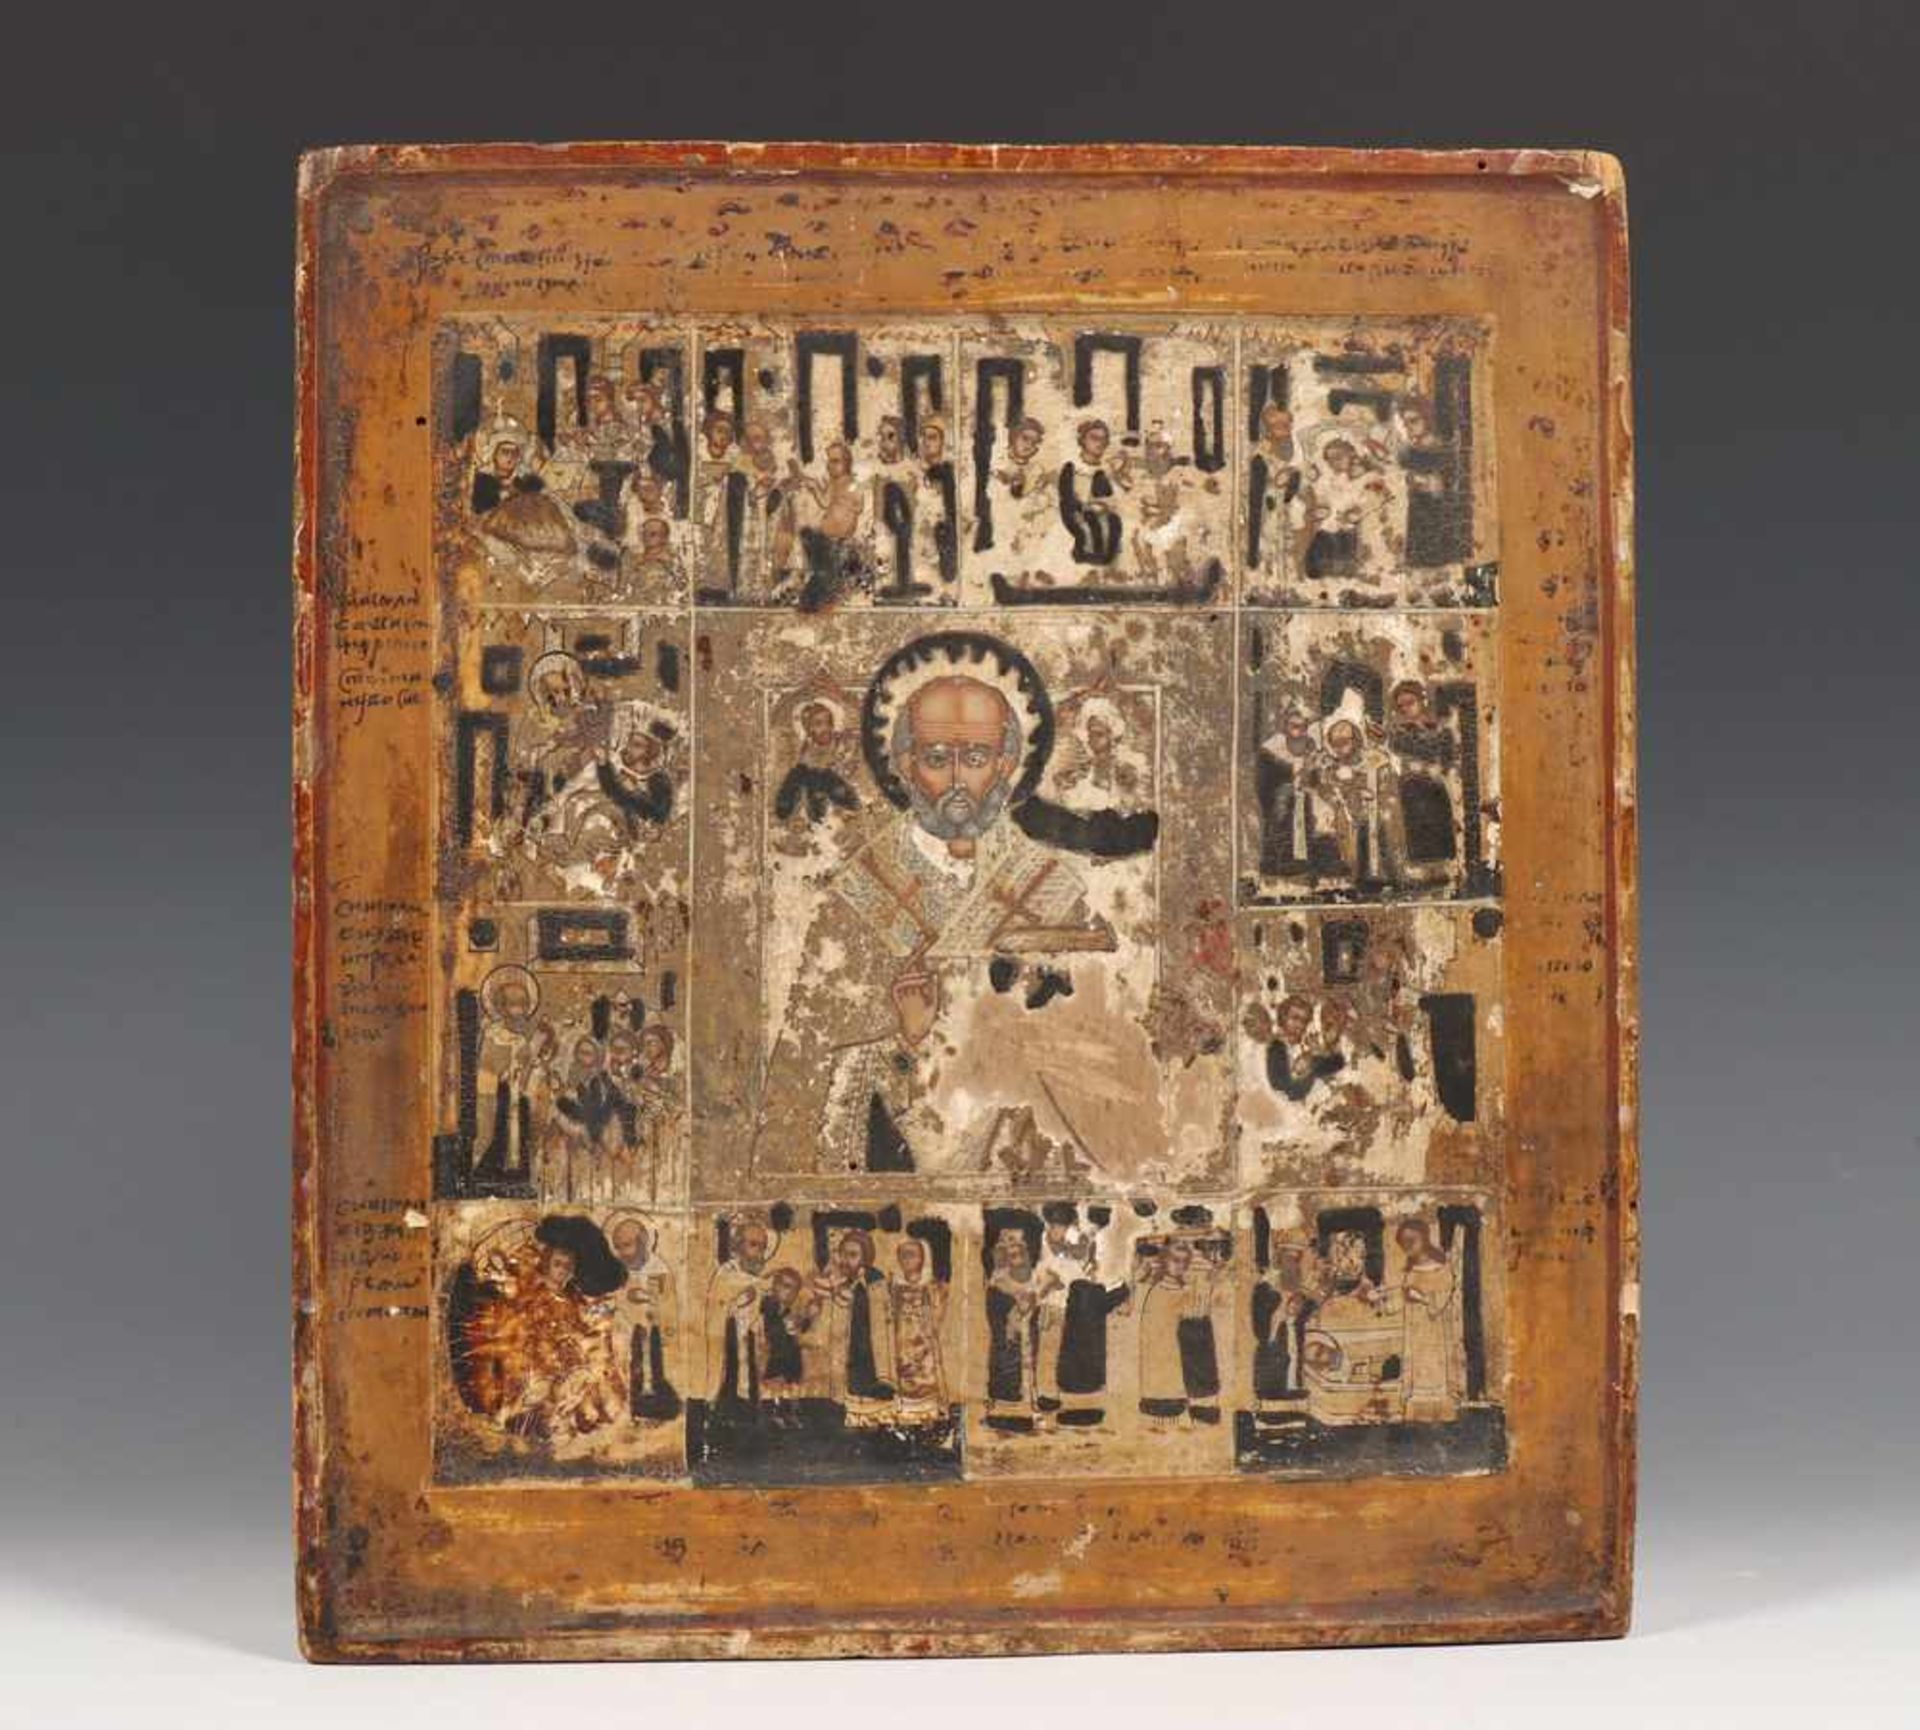 Griekenland, feestdagen ikoon, 19e eeuw;Nicolaas en 12 scenes; beschadigd; 31 x 28 cm.; 1400